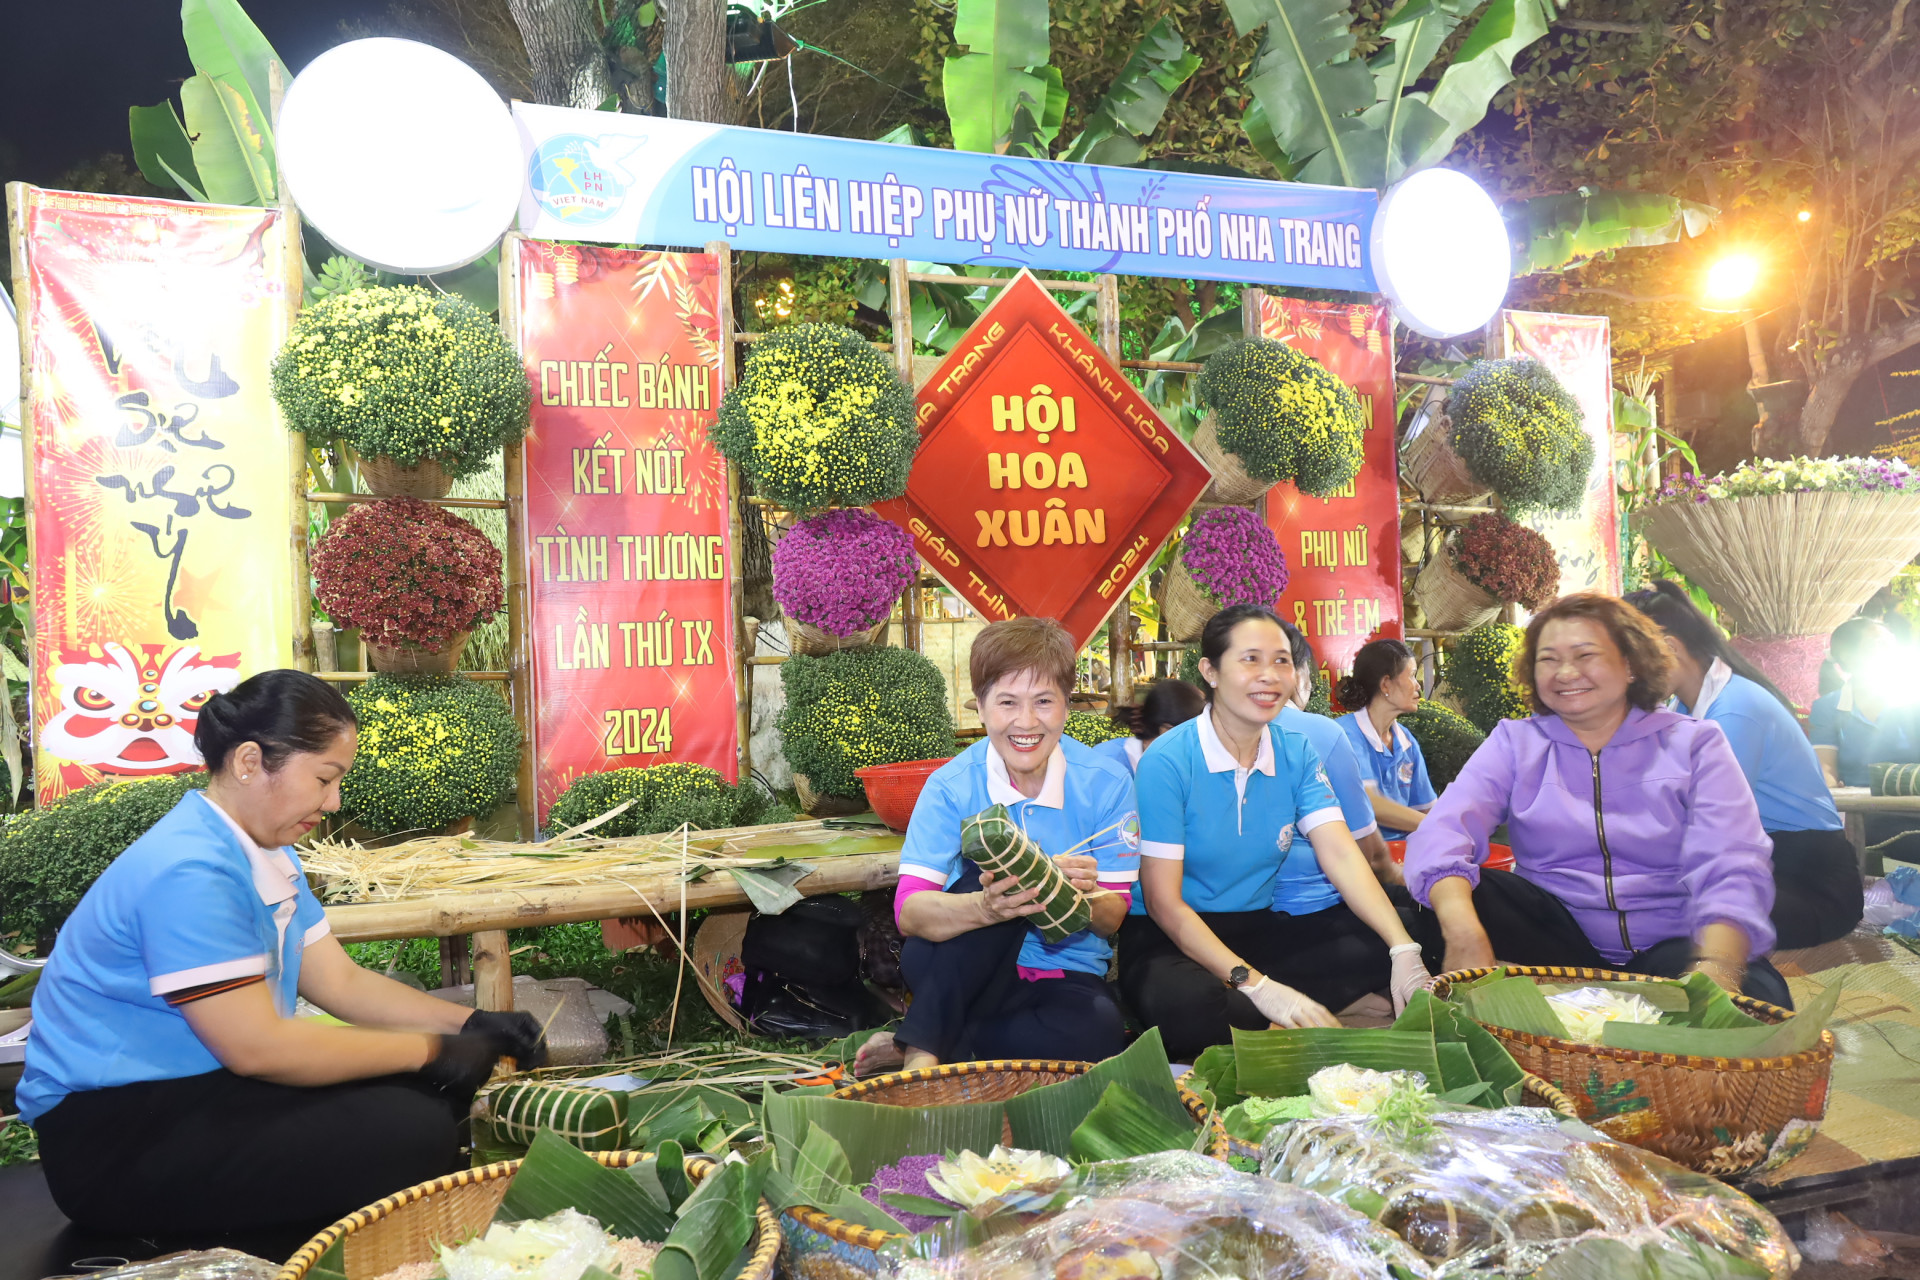 Hoạt động gói bánh tét do Hội Liên hiệp Phụ nữ TP. Nha Trang thực hiện trong không gian Hội hoa xuân. Mục tiêu của chương trình là gói 600 chiếc bánh tét để dành tặng cho những người có hoàn cảnh khó khăn.